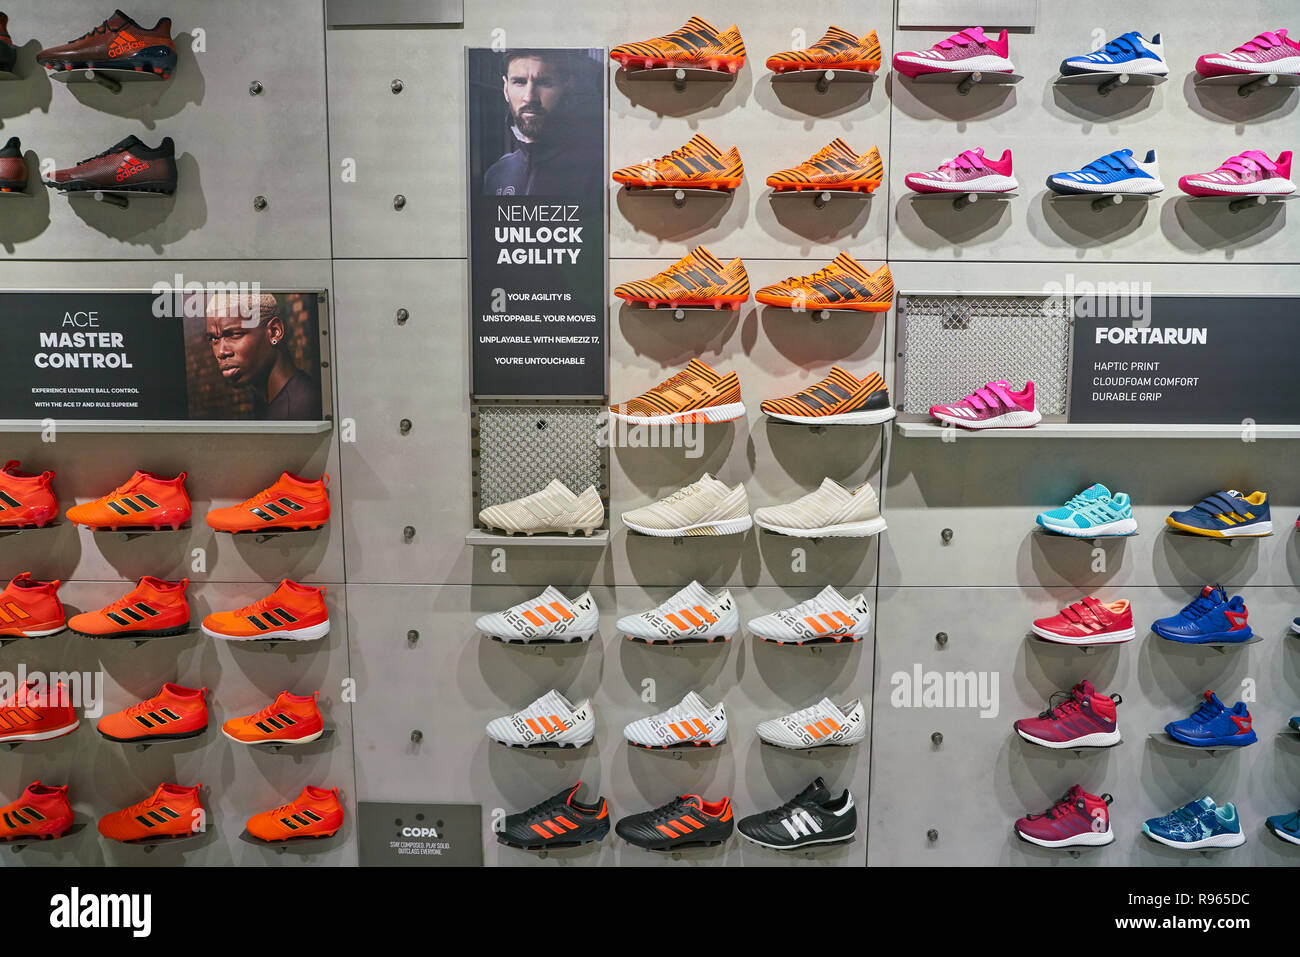 adidas stores in milan